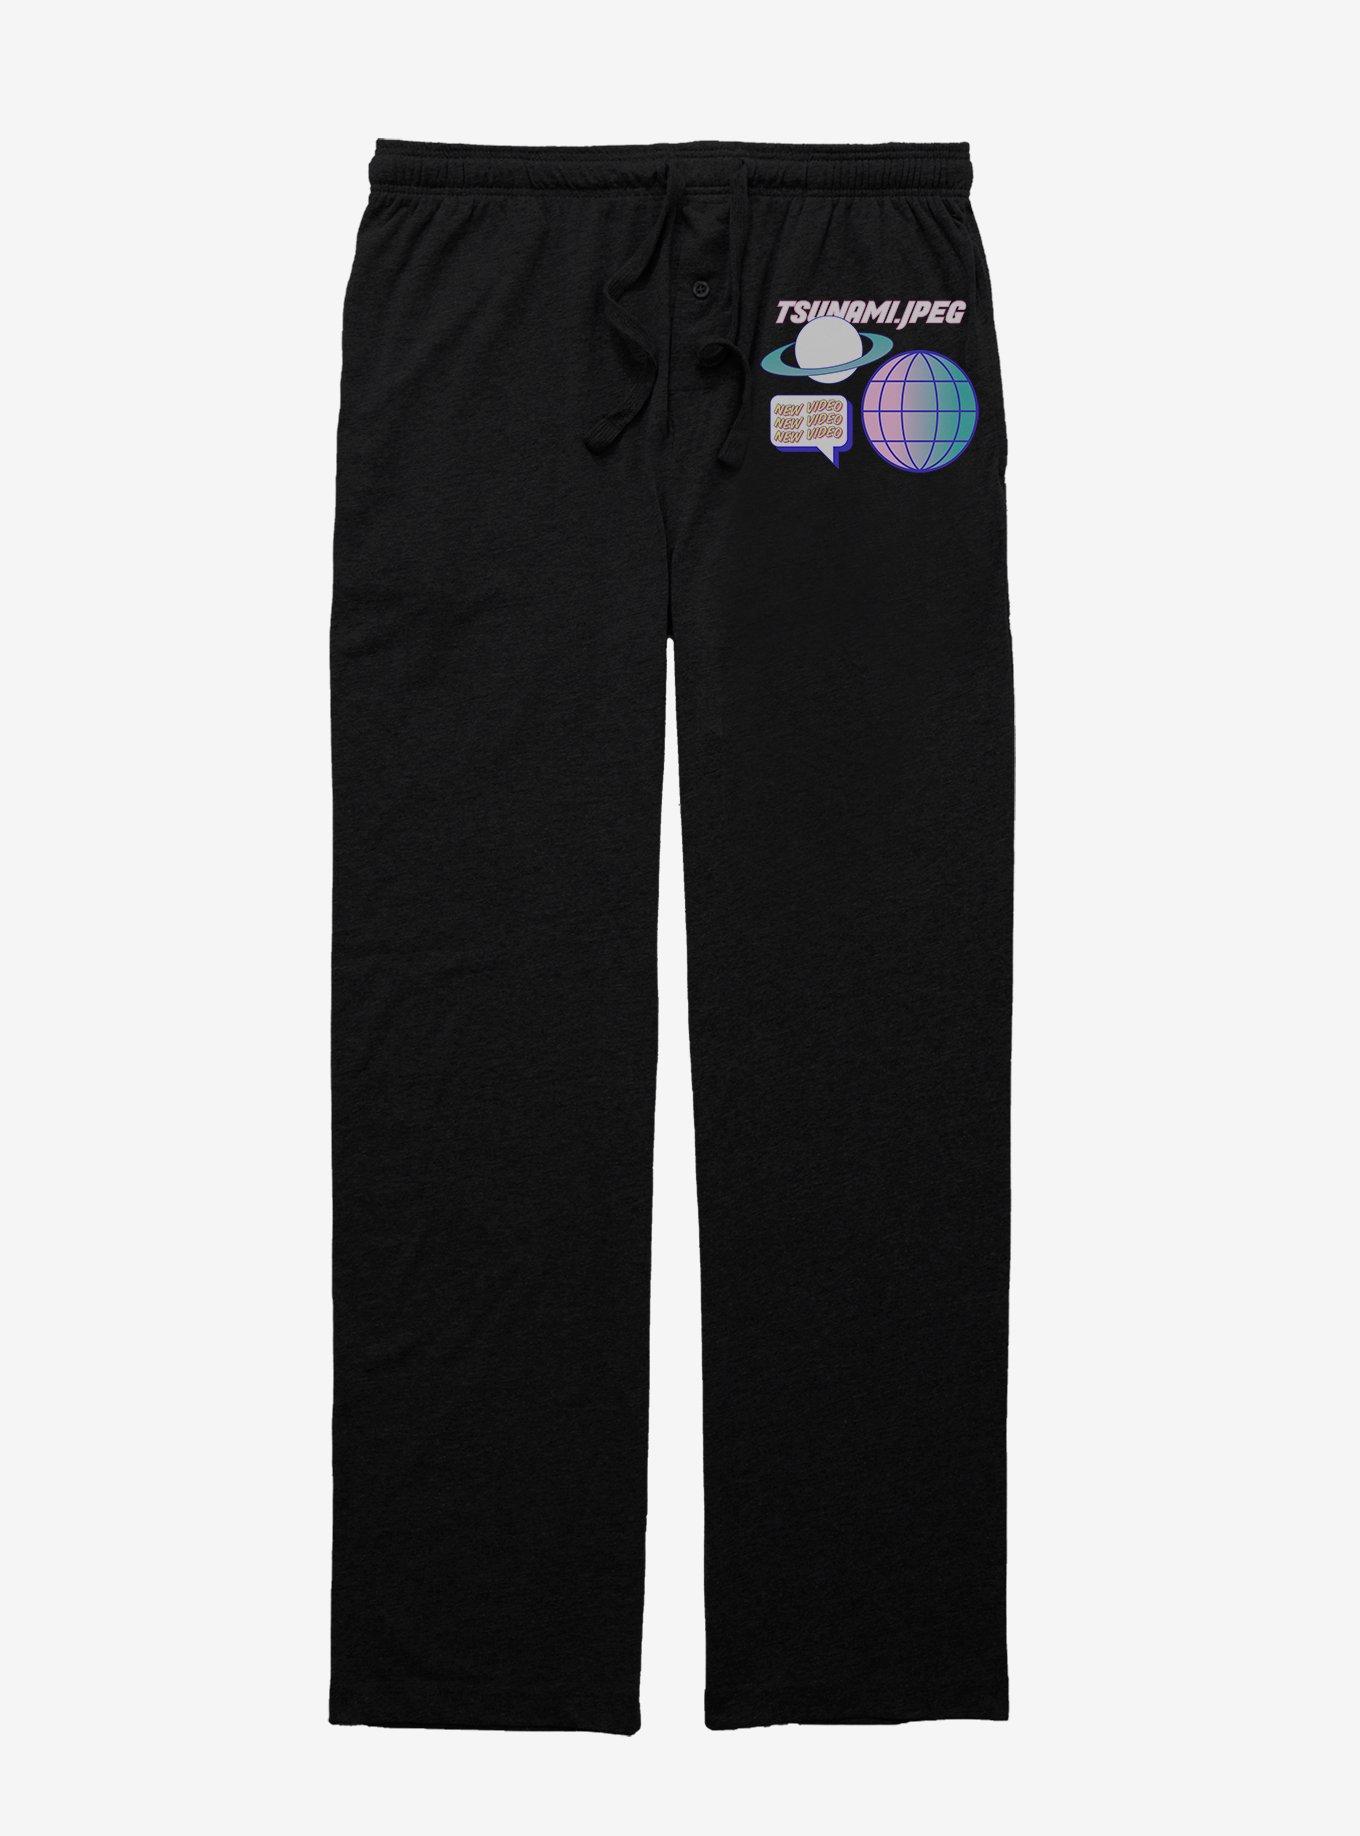 Tsunami Pajama Pants, BLACK, hi-res